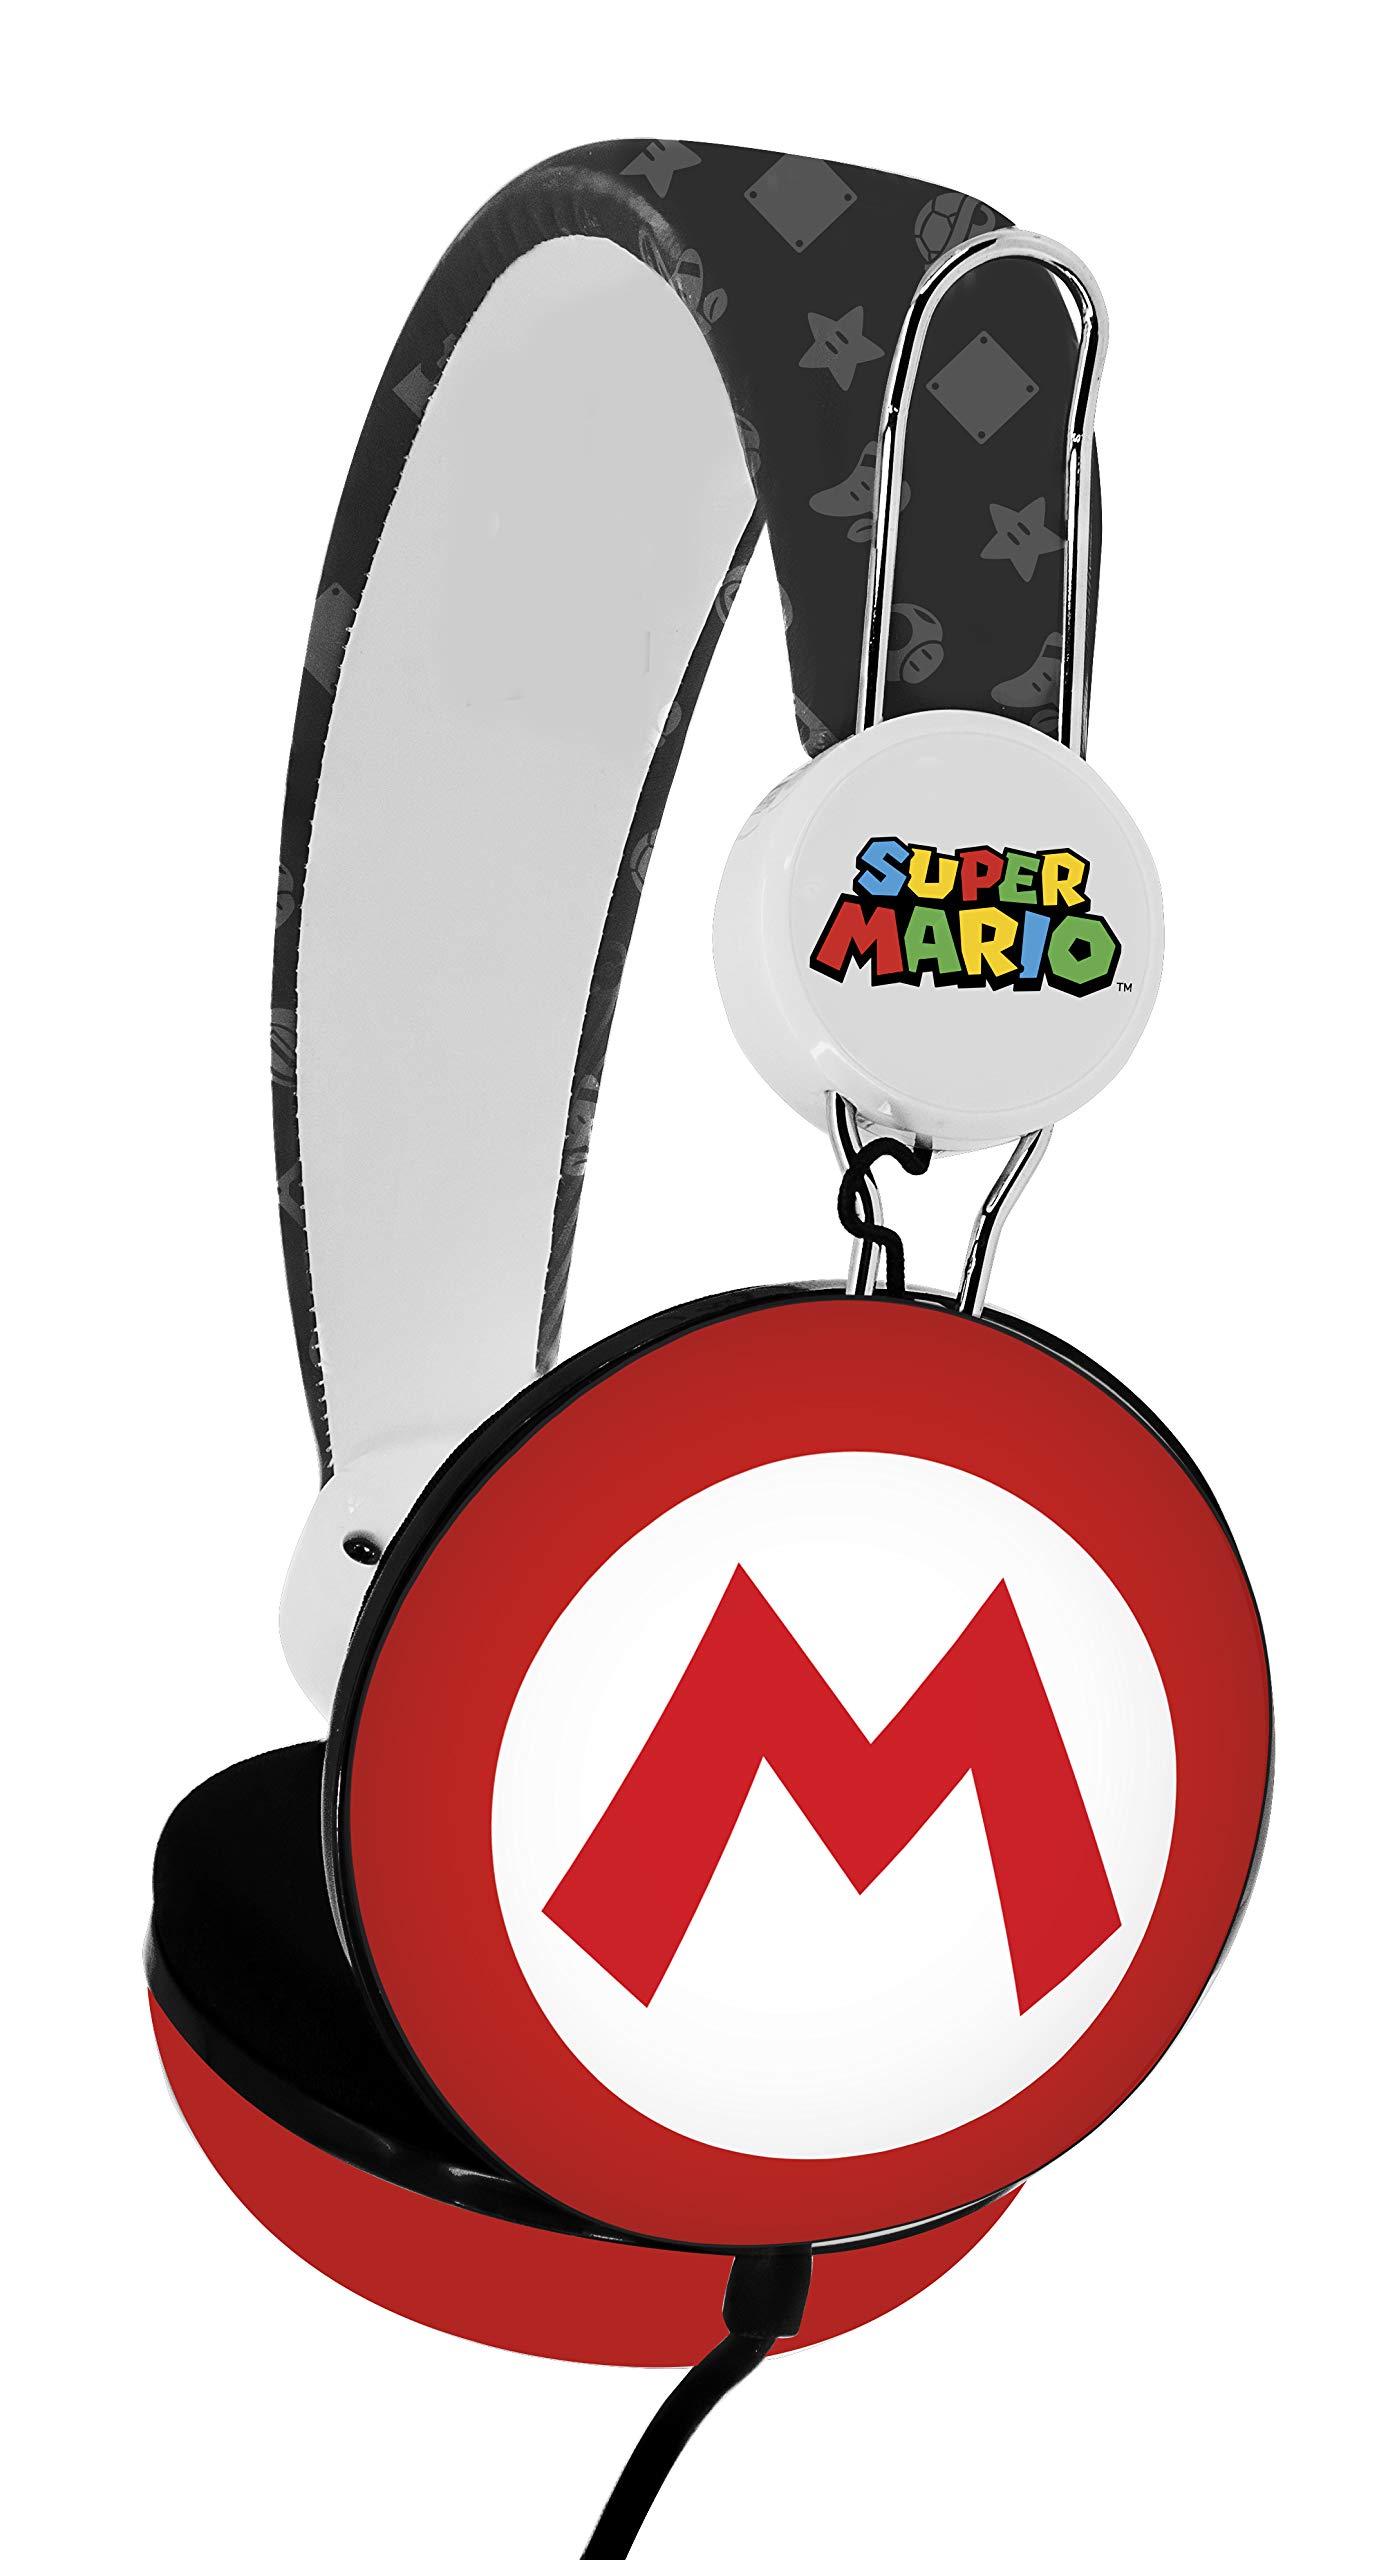 OTL Technologies Tween Kinder Kopfhörer Super Mario Icon Core (gepolsterte Bügel, buntes Comic Design, für Jungen und Mädchen), Rot/Weiß